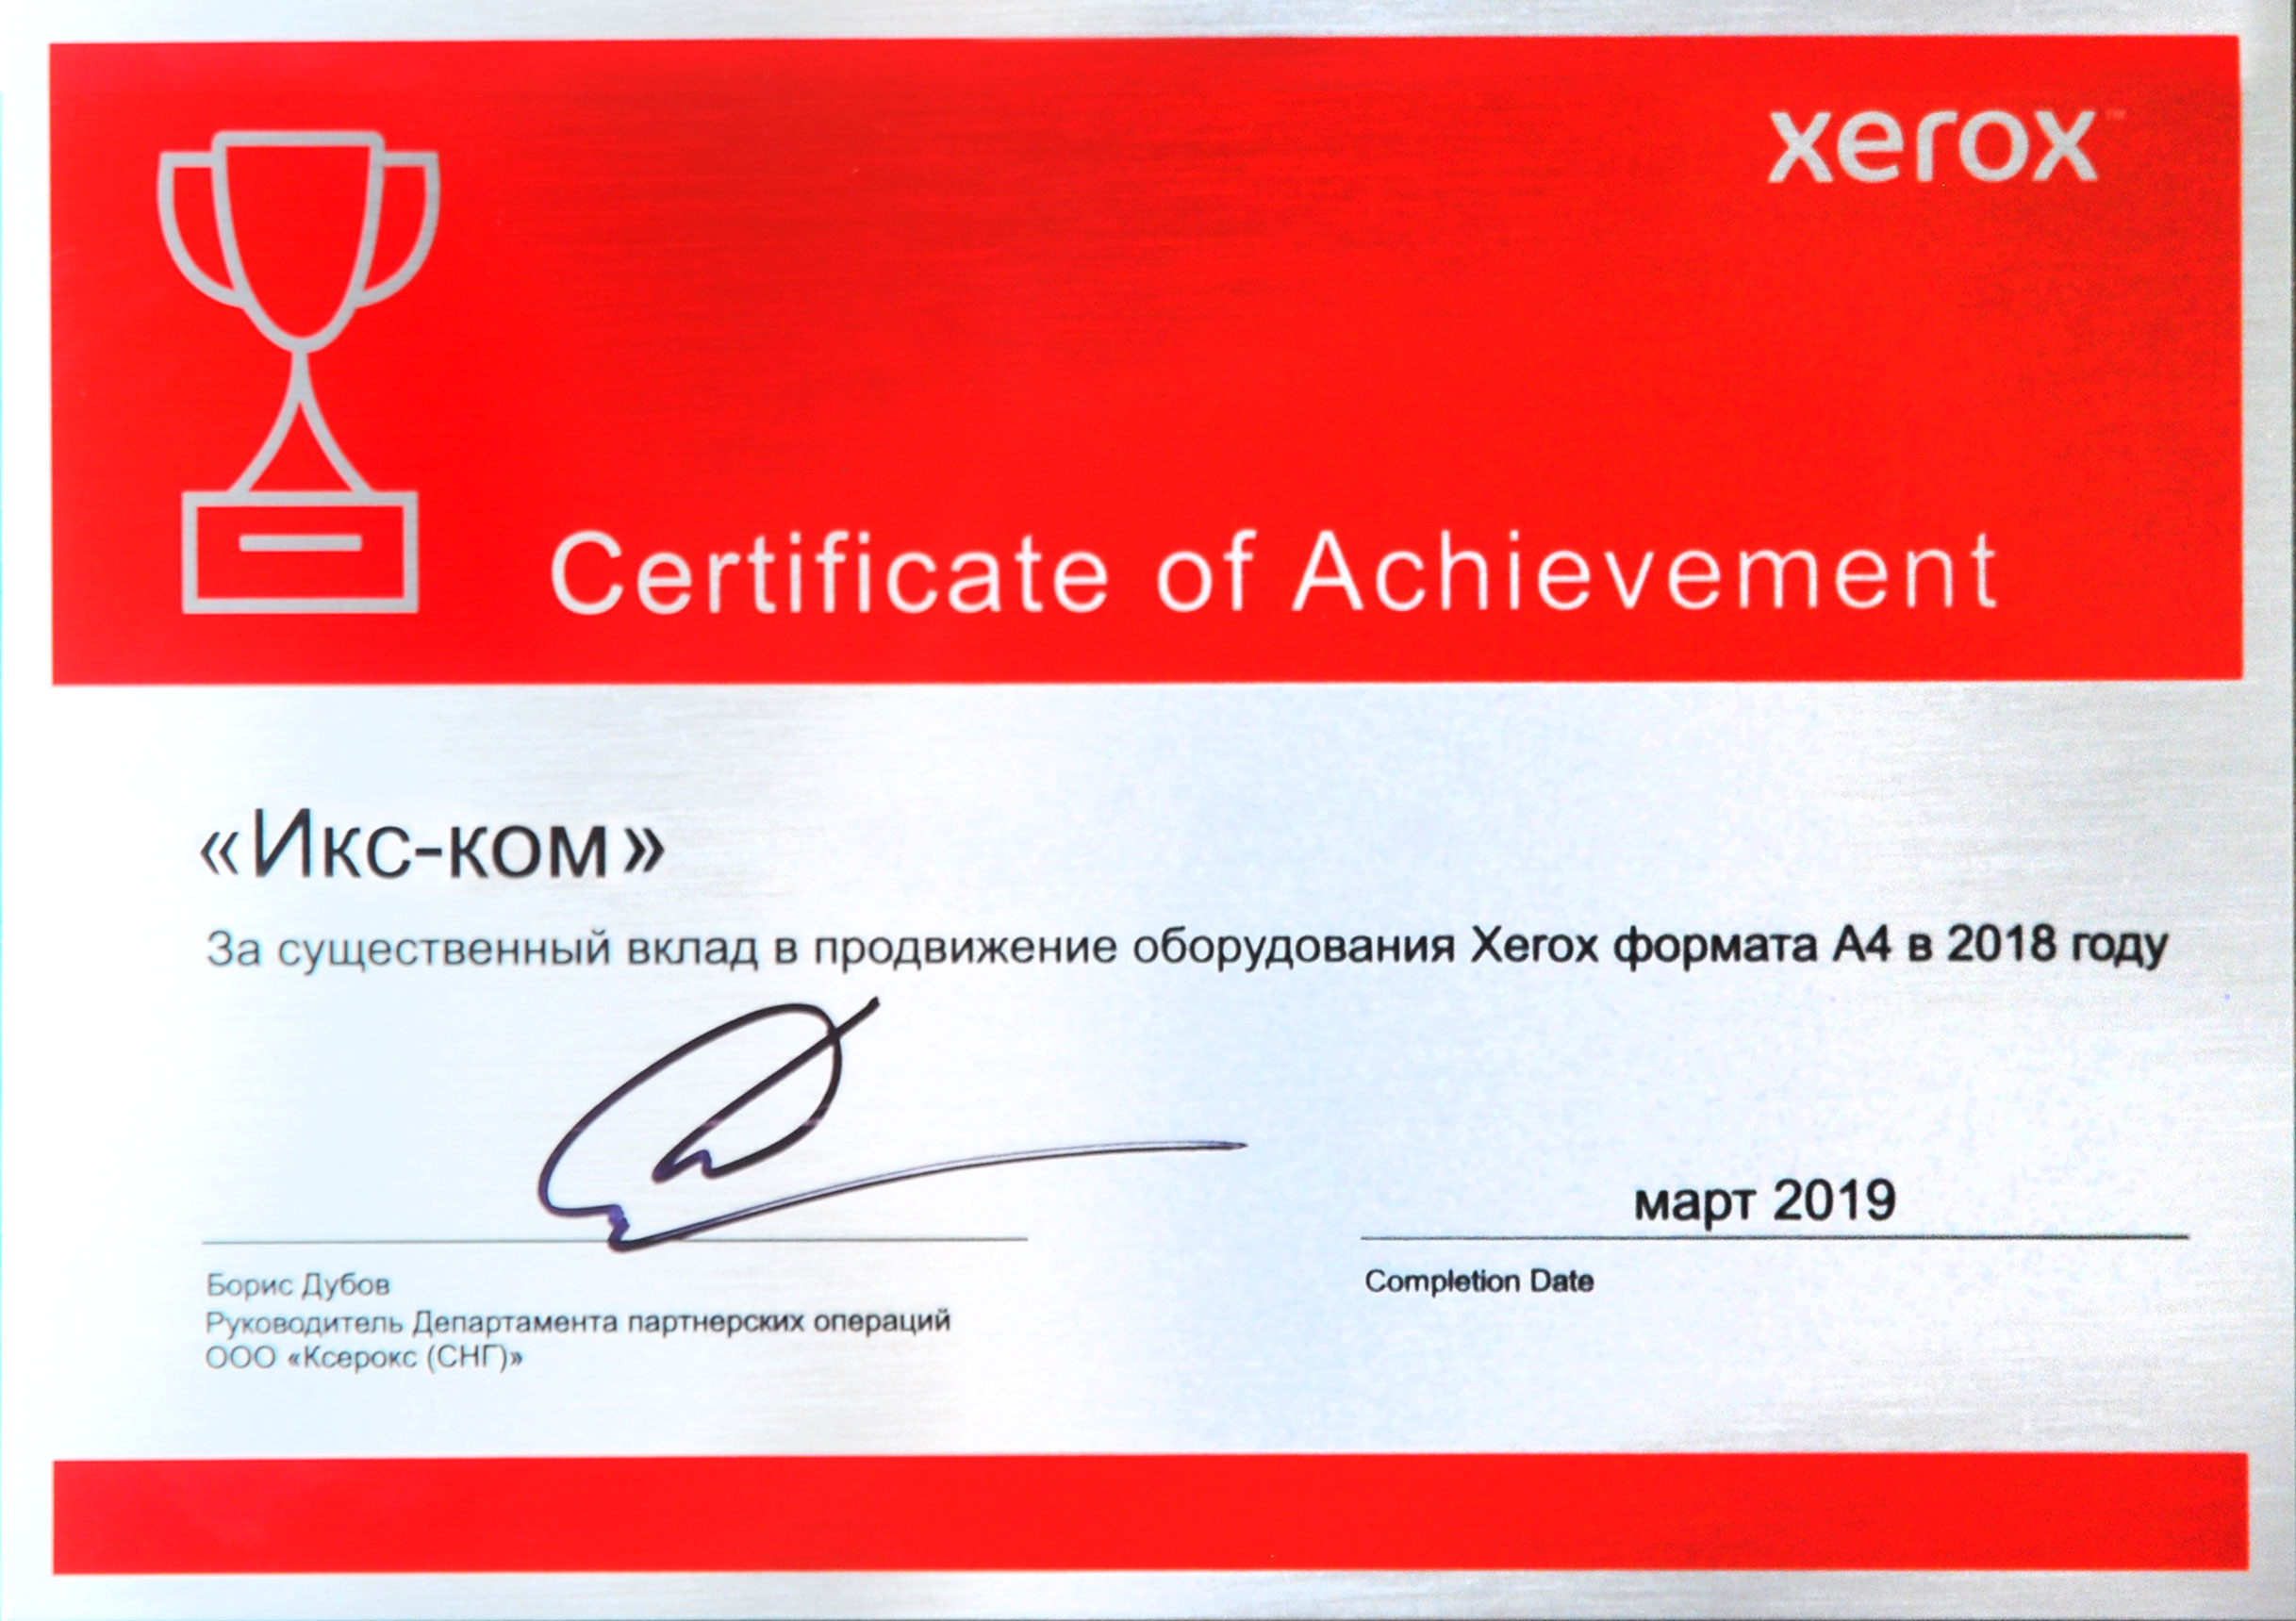 Xerox отметила успех X-Com в развитии совместного бизнеса